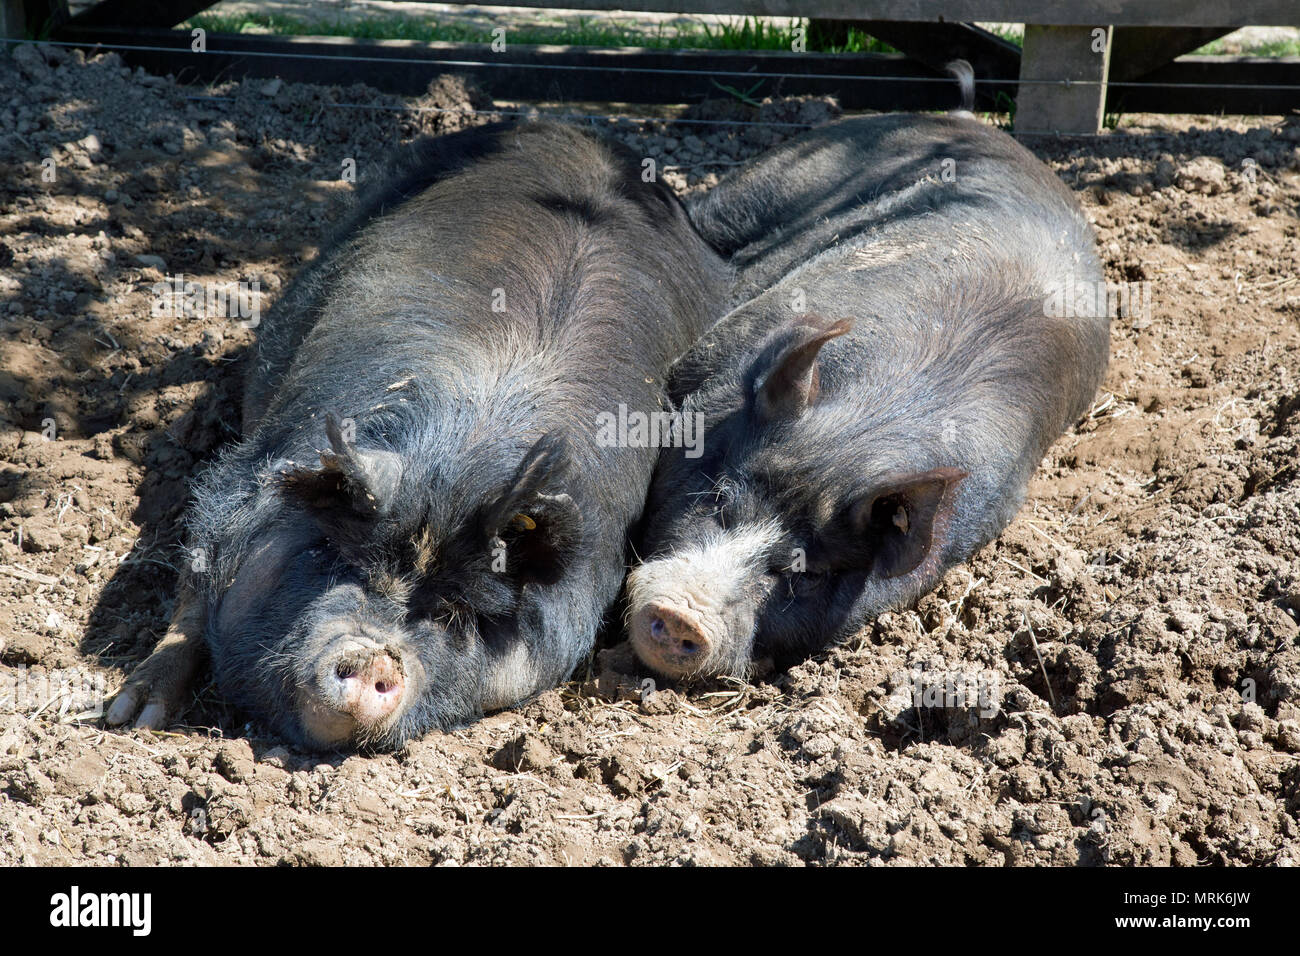 Les porcs aux cheveux noirs dans un champ boueux Banque D'Images